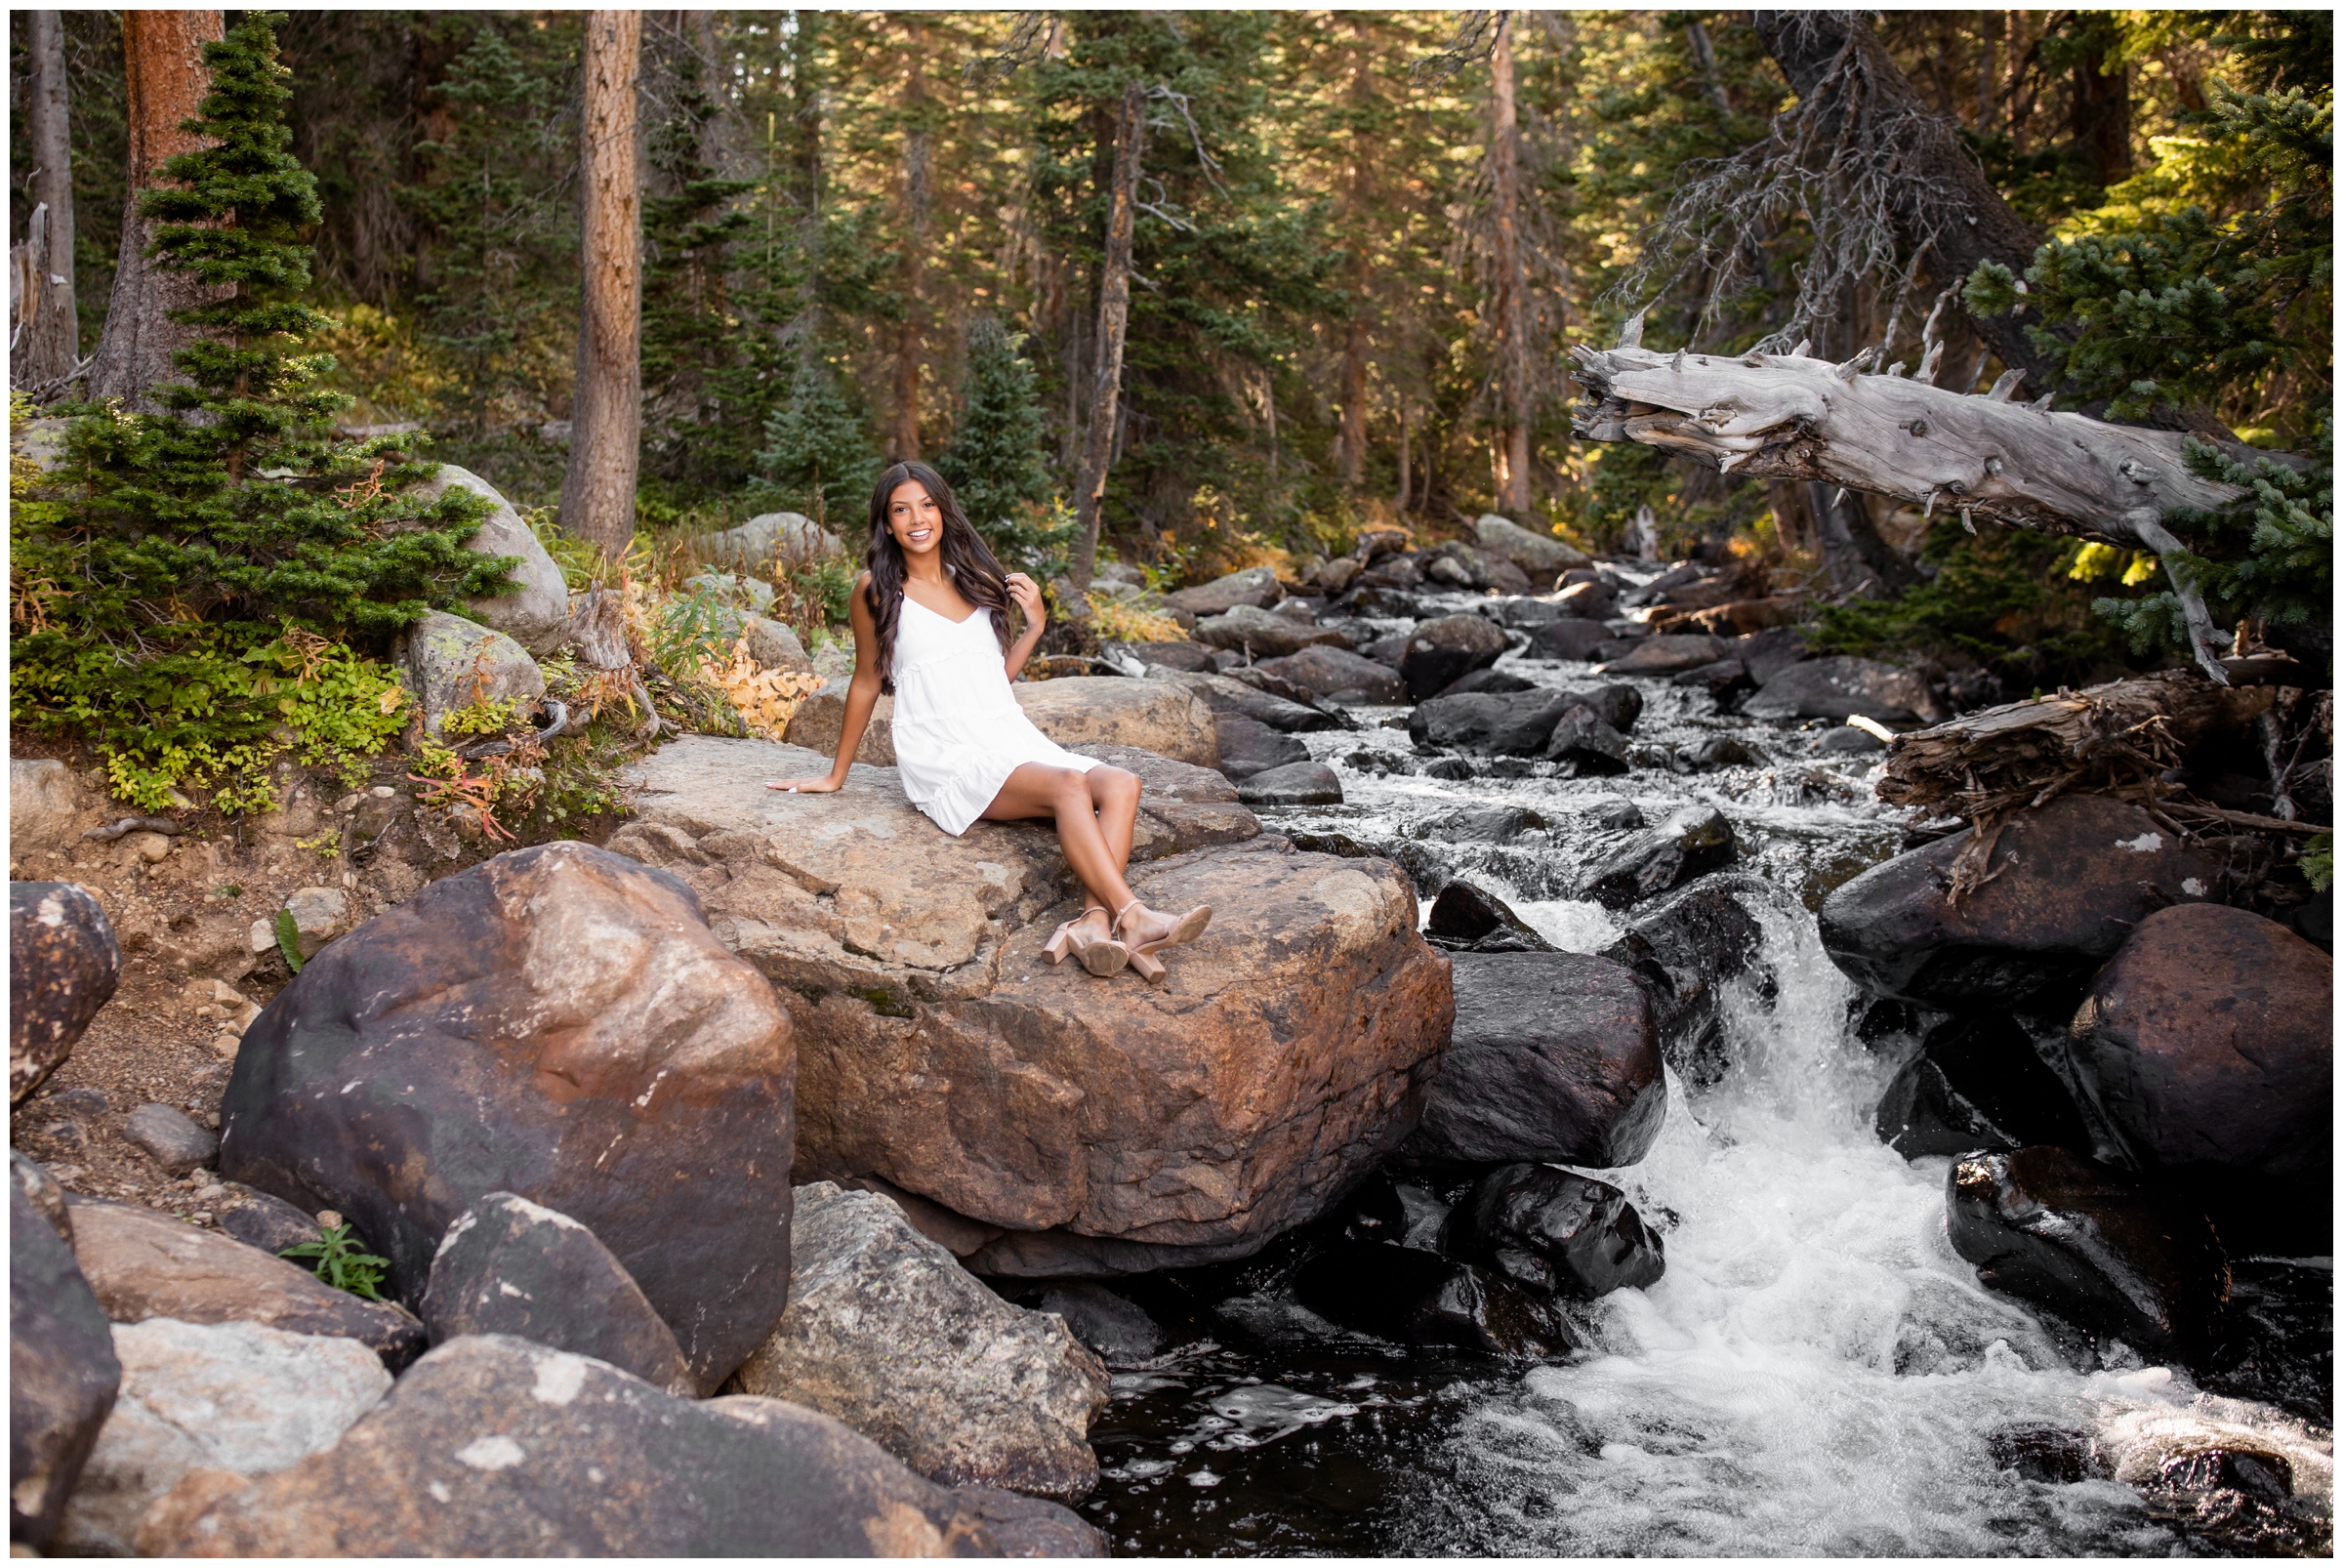 Colorado waterfall senior photography inspiration in the Colorado mountains 